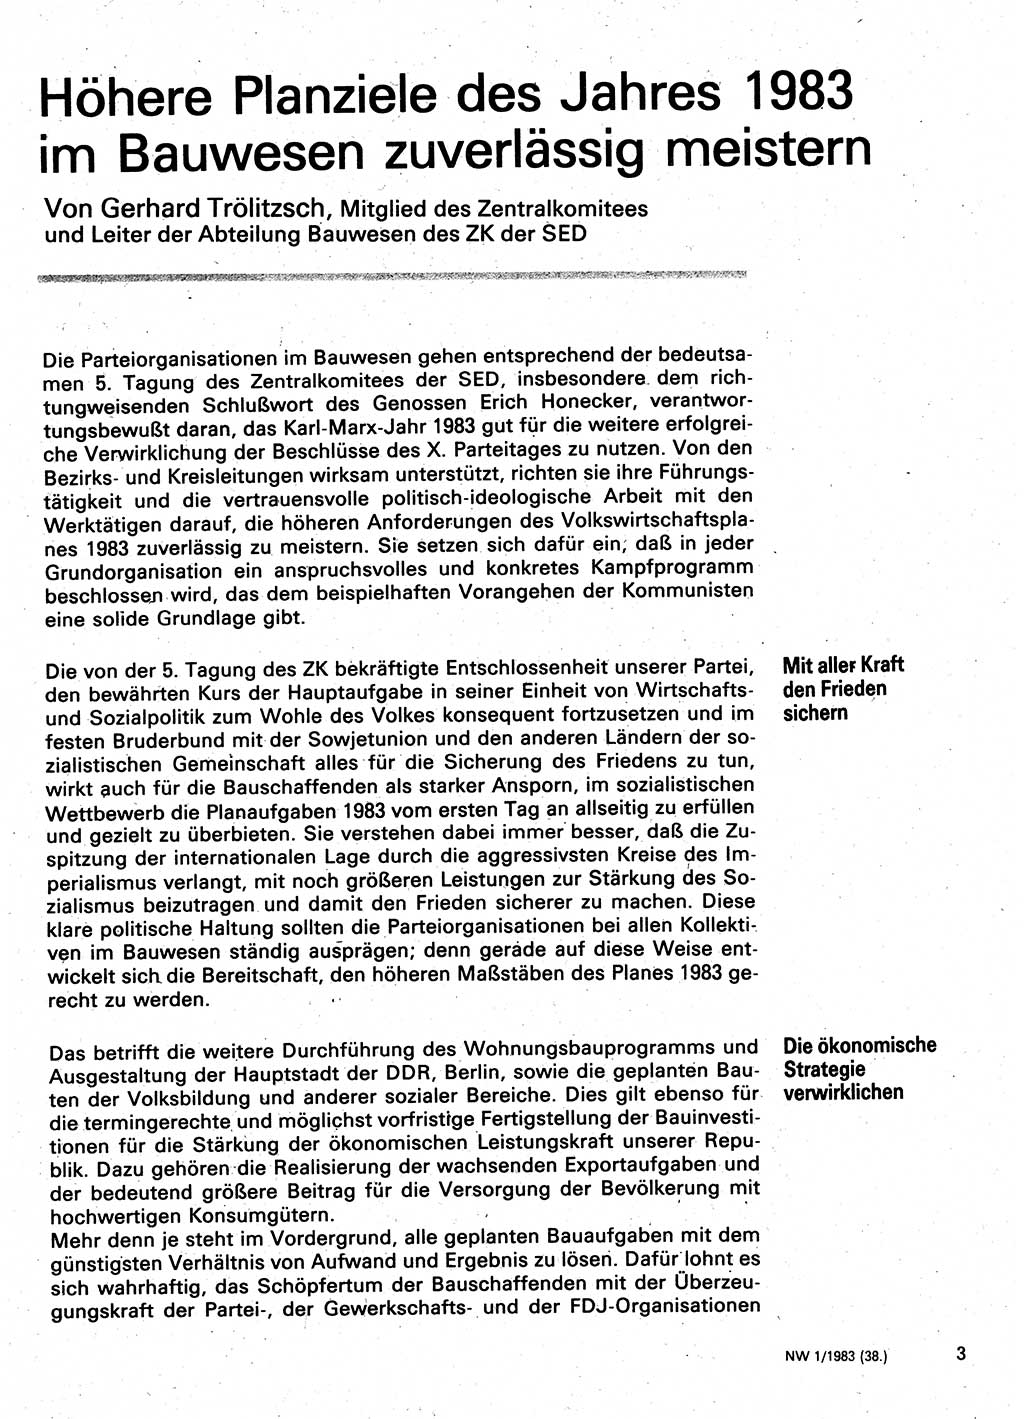 Neuer Weg (NW), Organ des Zentralkomitees (ZK) der SED (Sozialistische Einheitspartei Deutschlands) fÃ¼r Fragen des Parteilebens, 38. Jahrgang [Deutsche Demokratische Republik (DDR)] 1983, Seite 3 (NW ZK SED DDR 1983, S. 3)